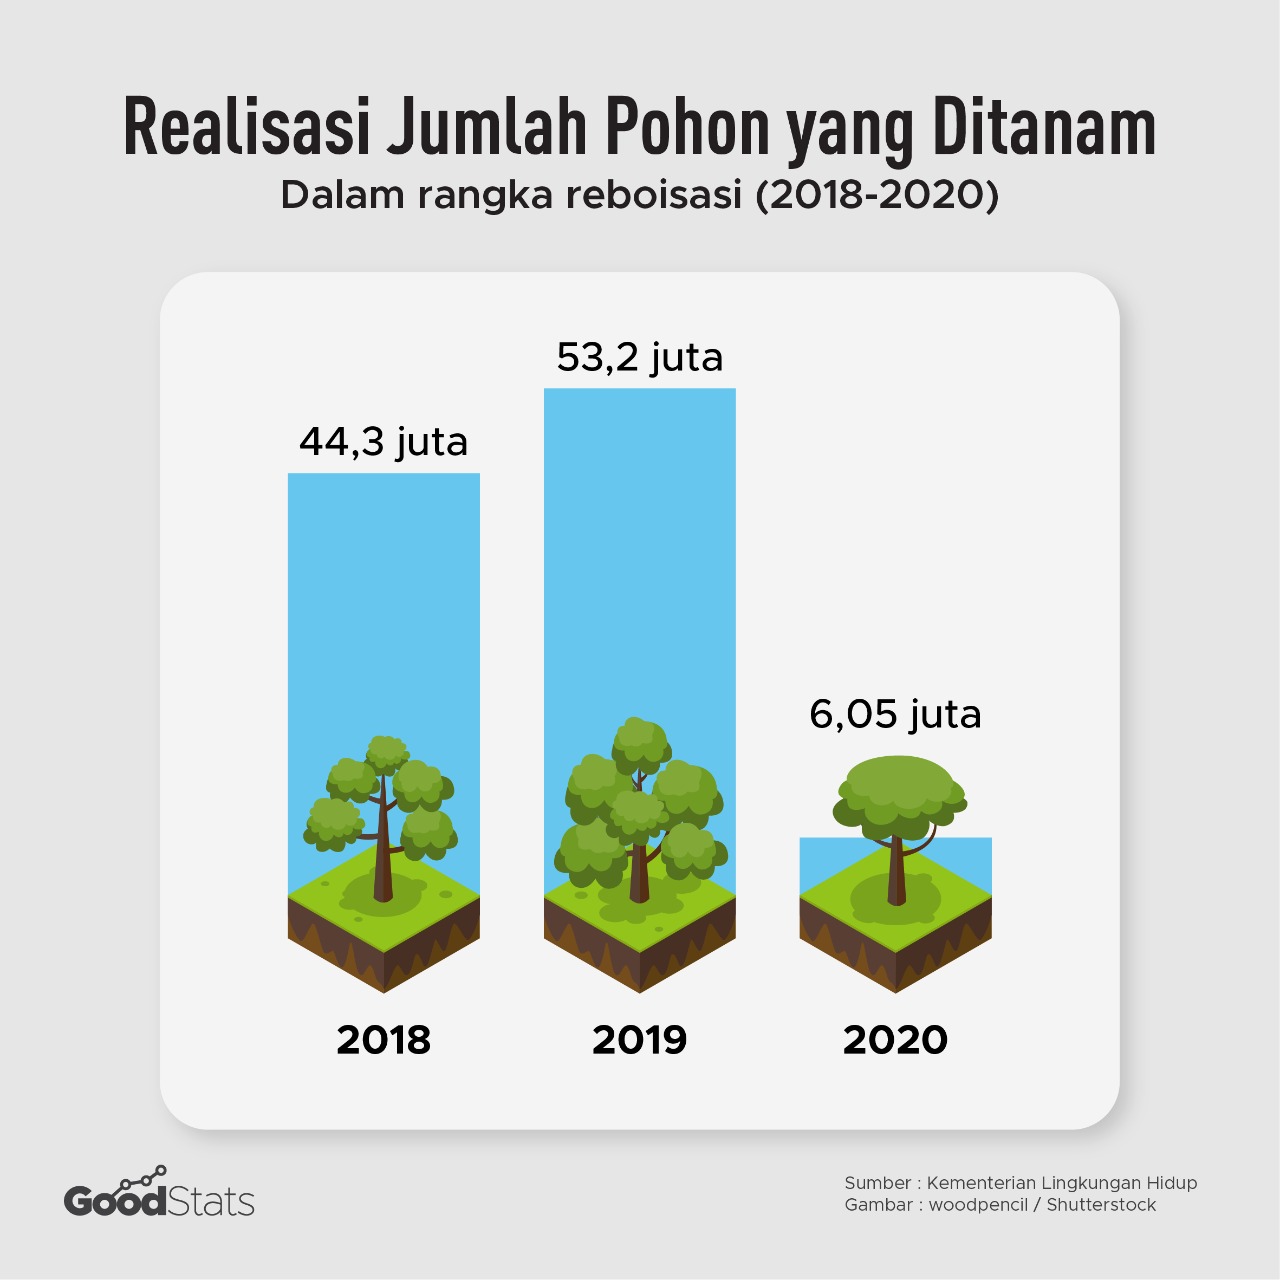 Realisasi jumlah pohon yang ditanam dalam reboisasi di Indonesia | Aghapier/GoodStats